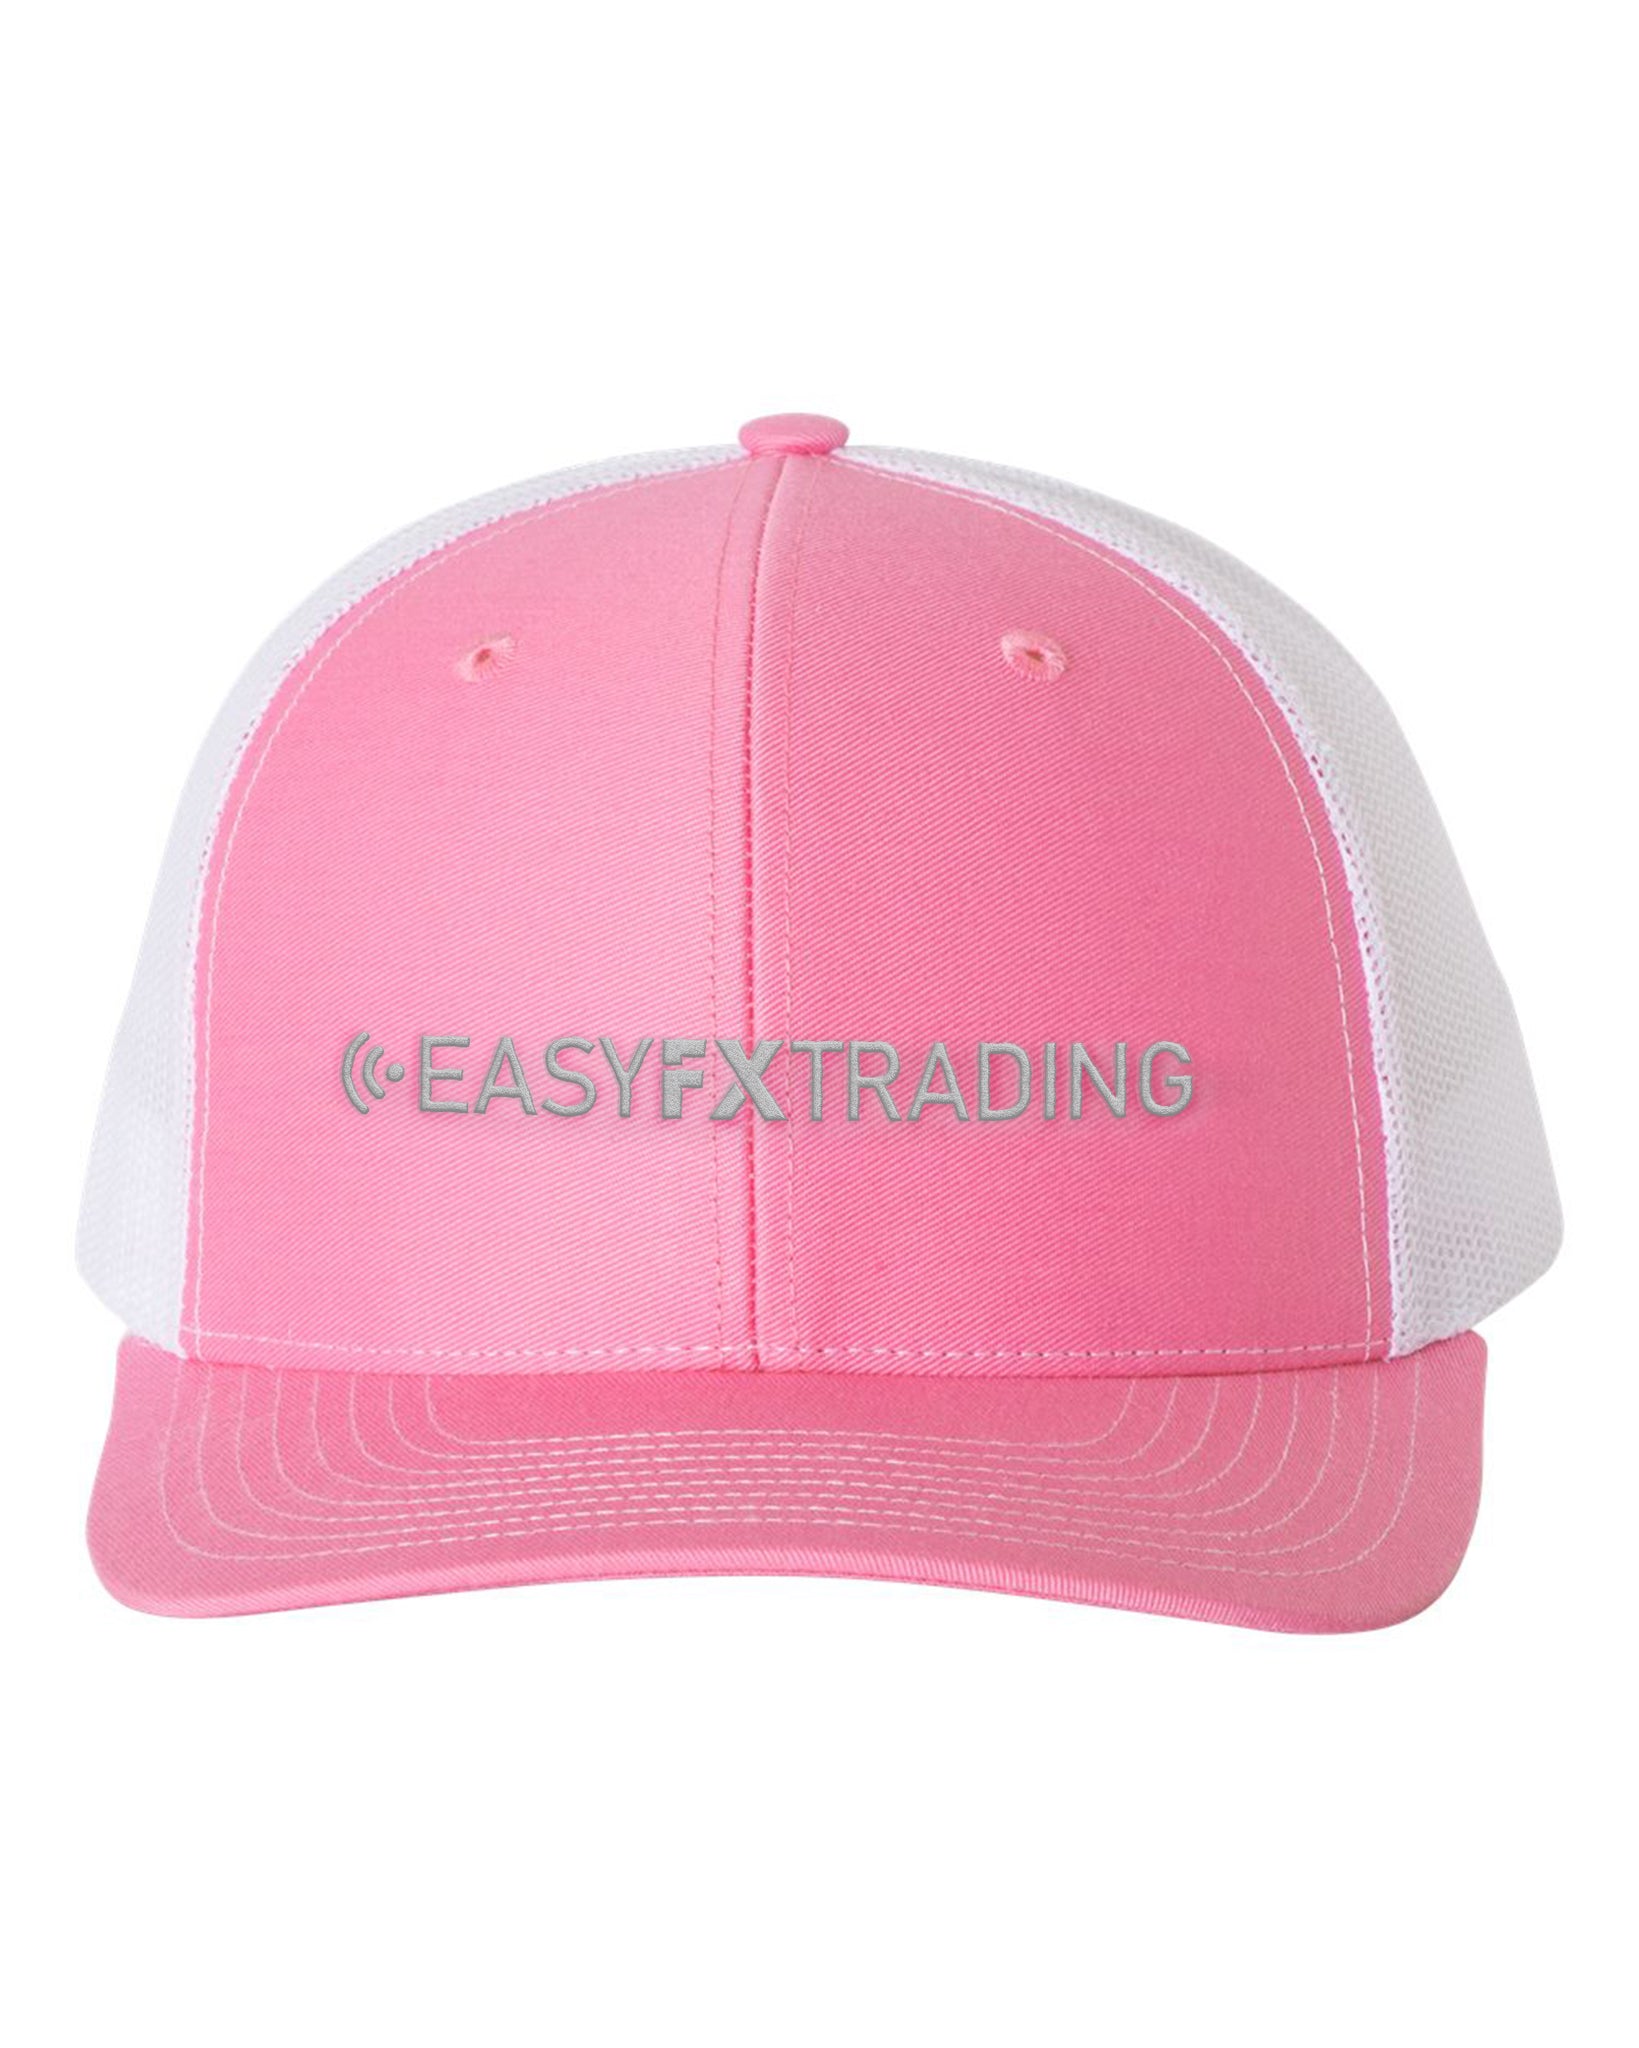 Logo-Long-Gray on White & Pink Hat